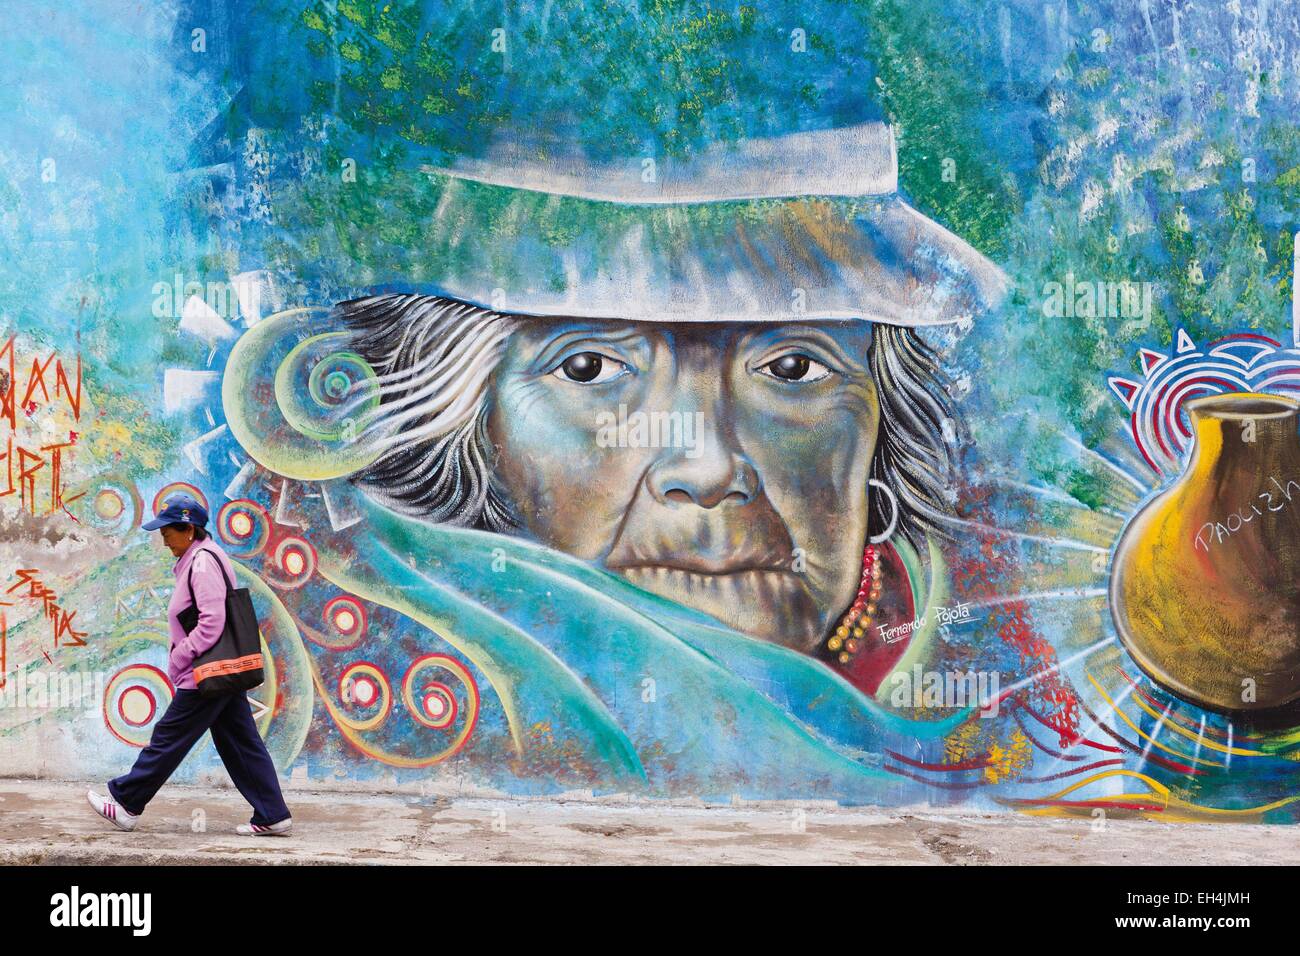 L'Équateur, Imbabura, Atuntaqui, occupé équatorien femme moderne en face d'un mur d'écriture graffiti représentant une femme traditionnelle des Andes Banque D'Images